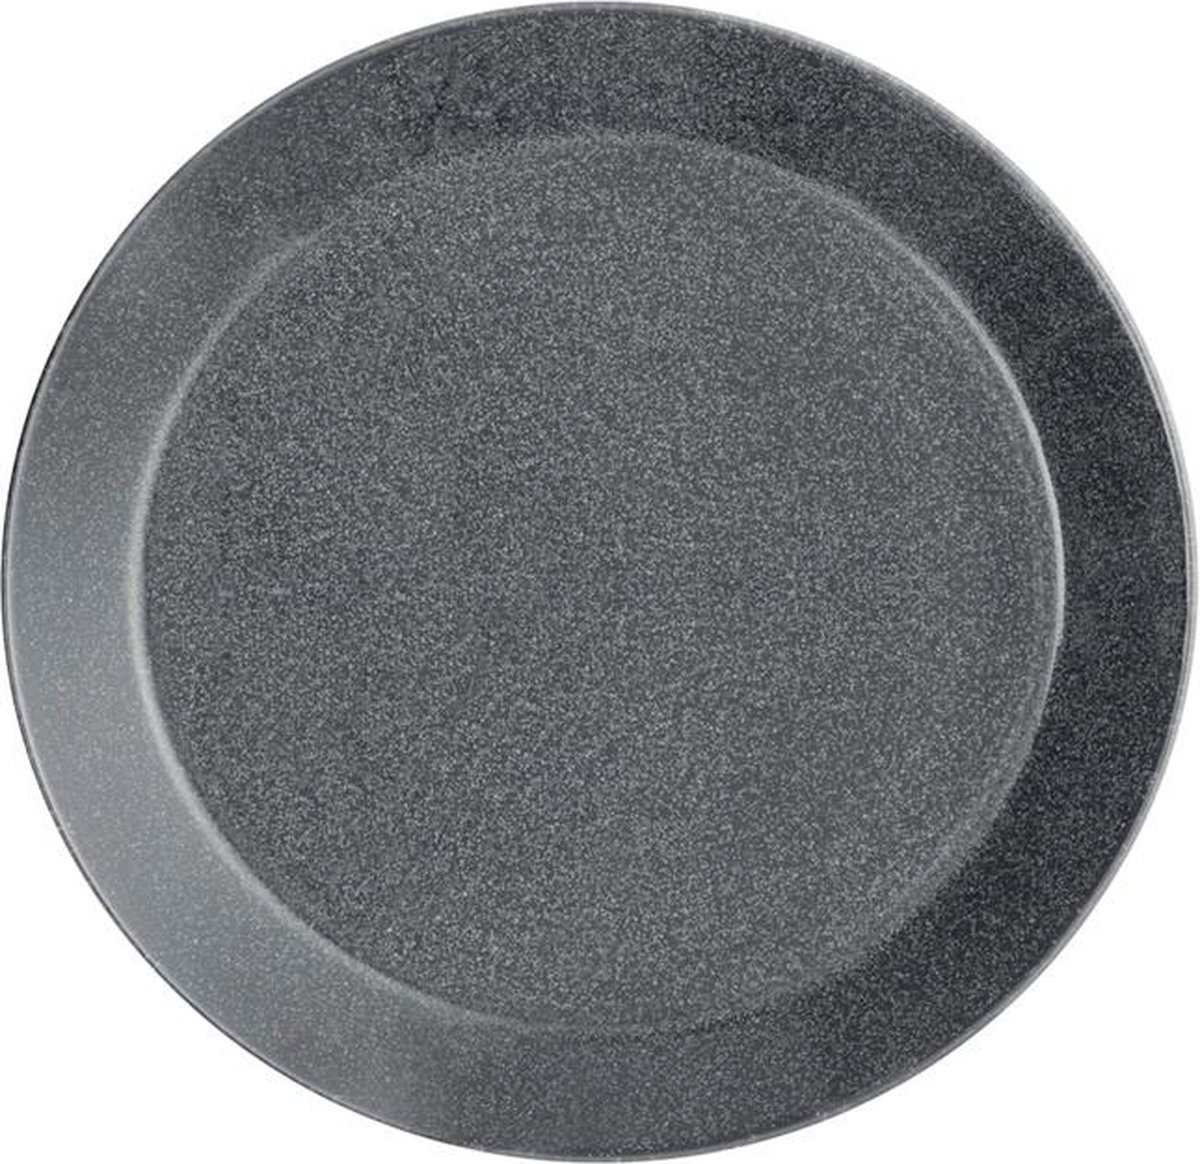 Iittala Teema Bord - 21 cm - Dotted grey